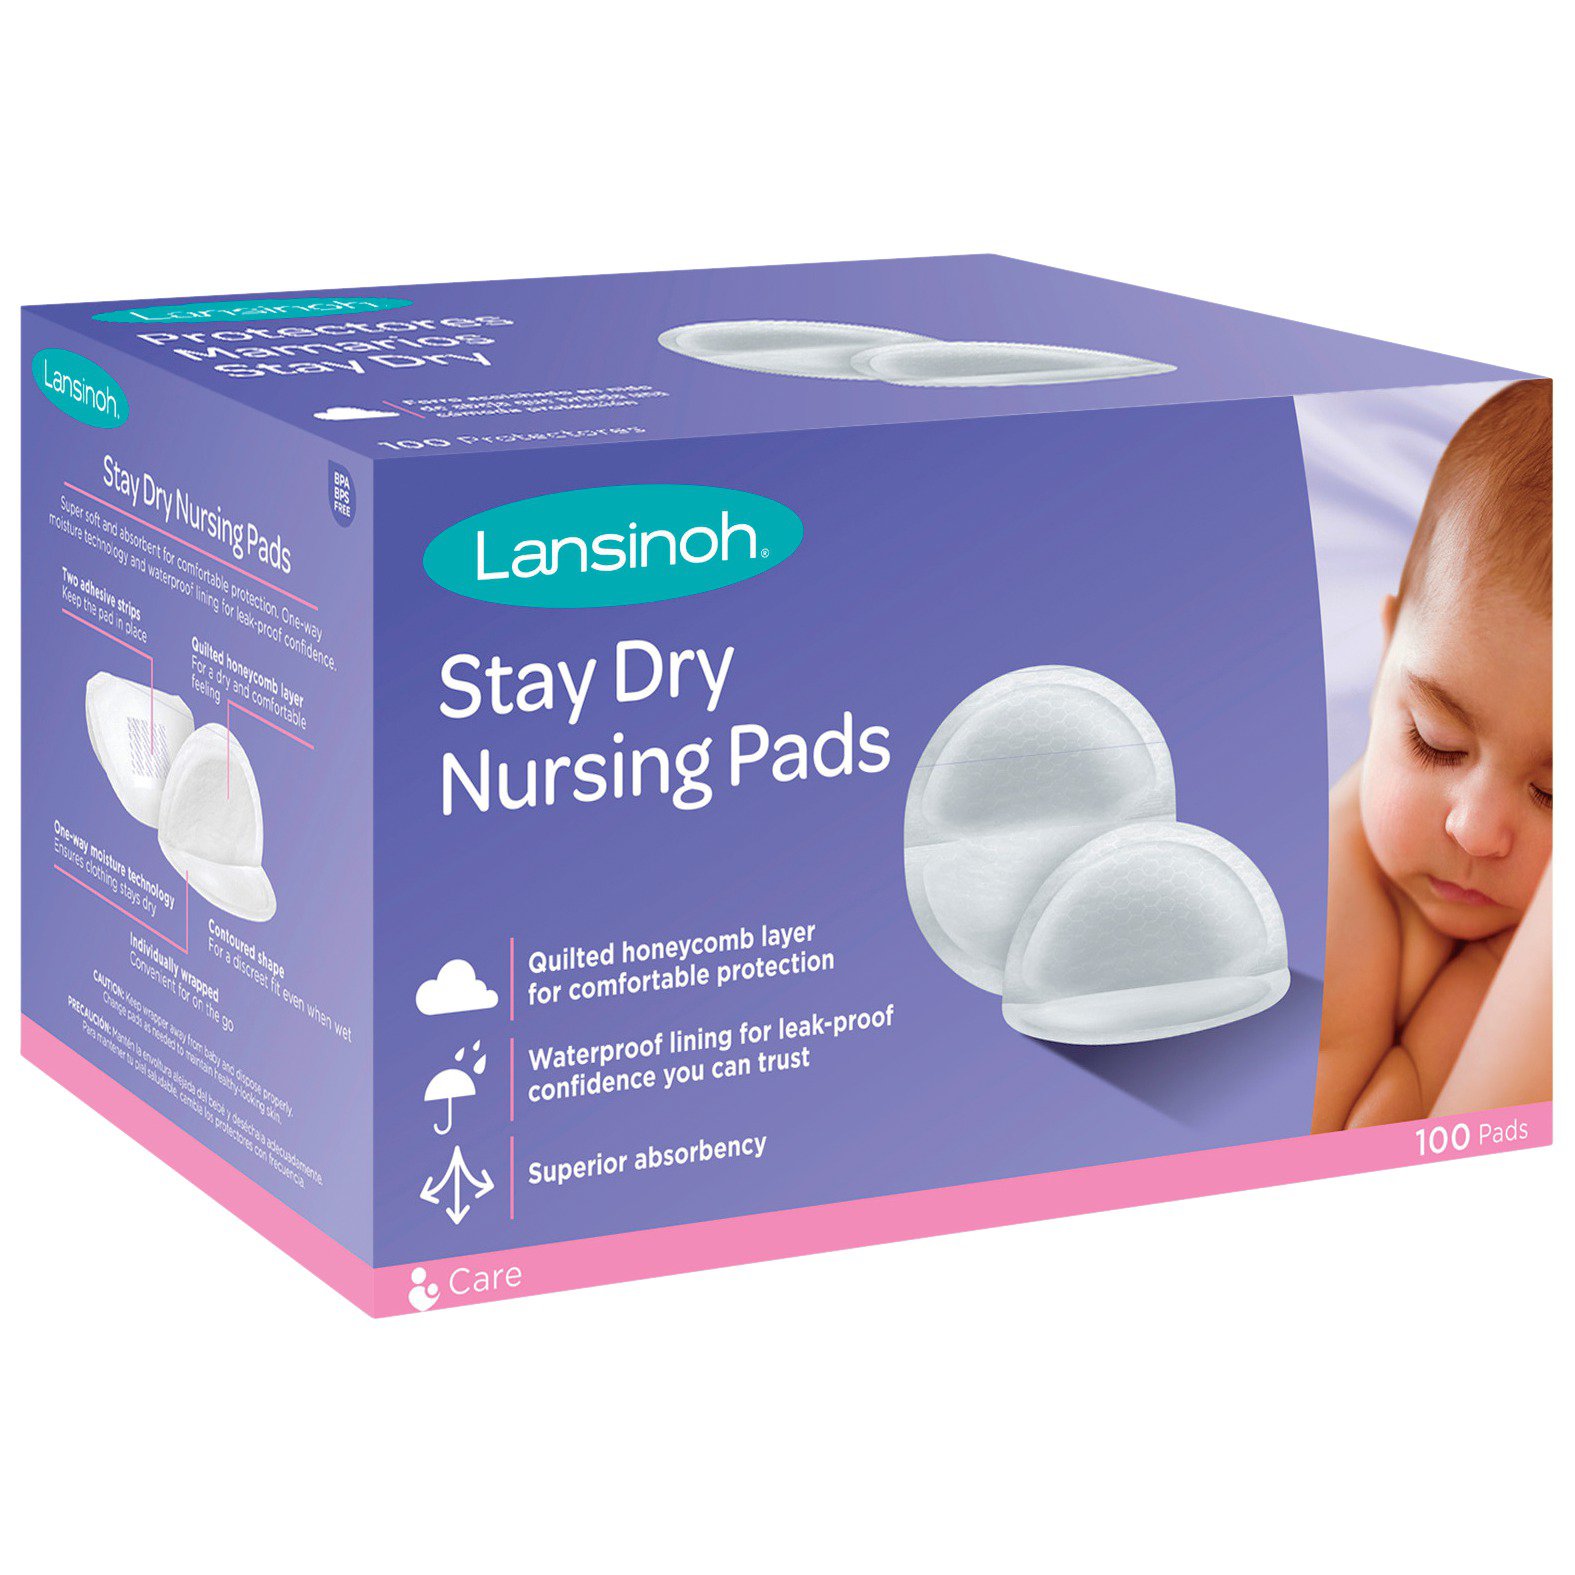 Lansinoh Stay Dry Nursing Pads - Shop Nursing Pads at H-E-B